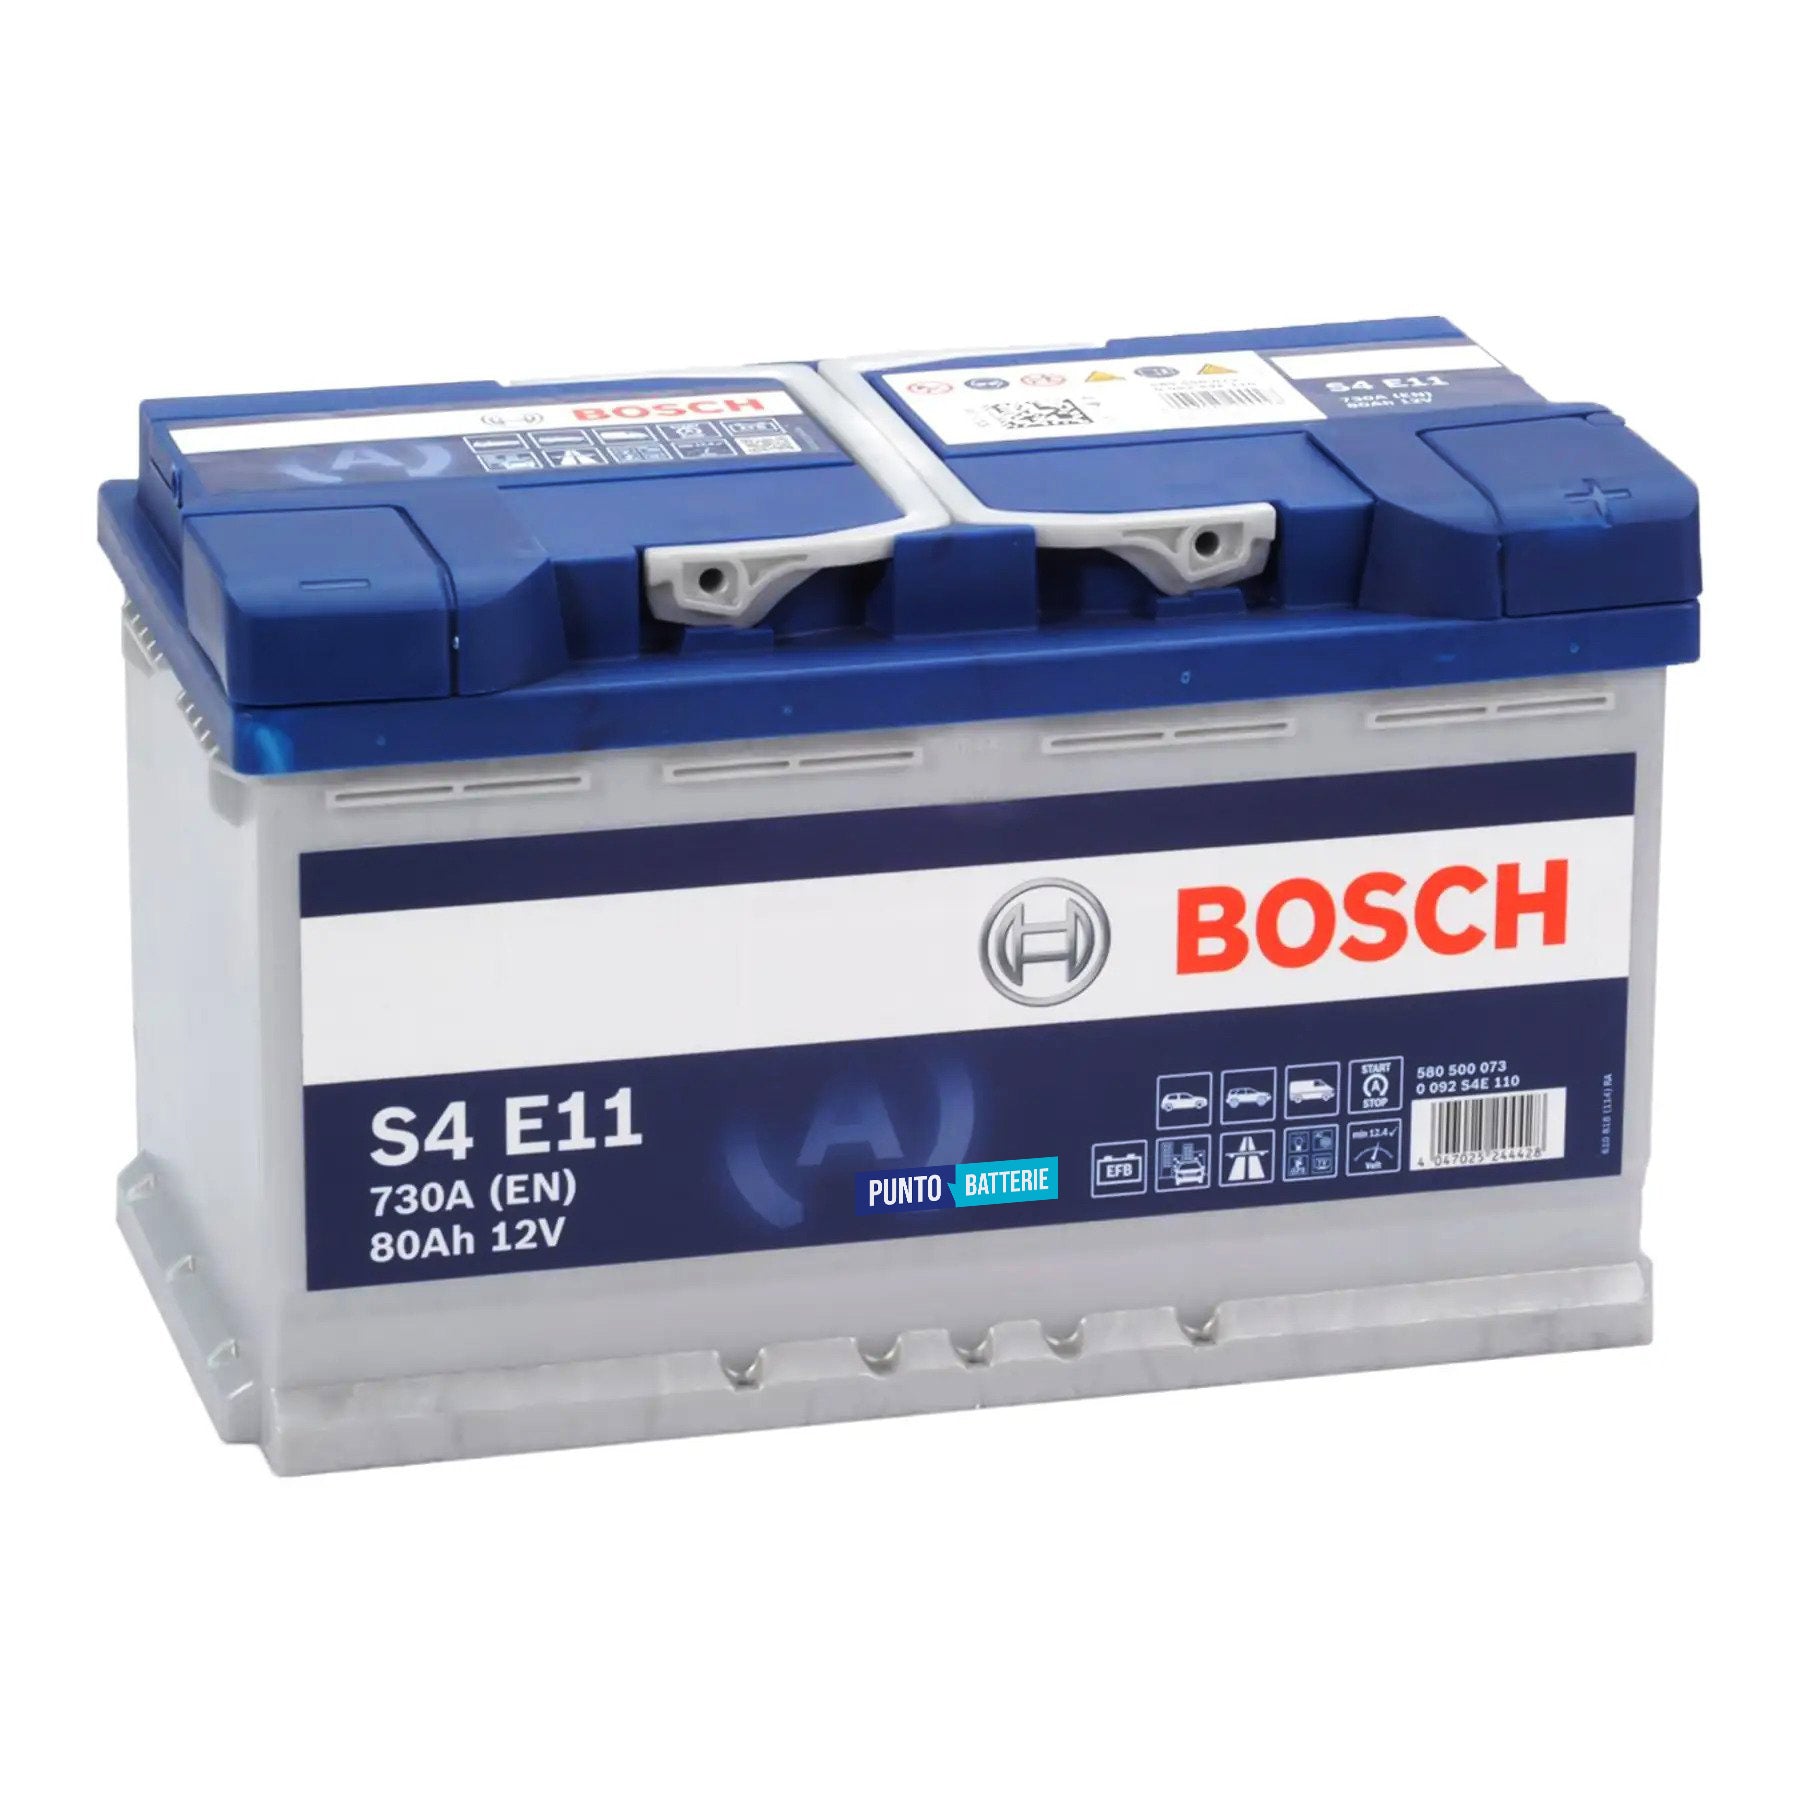 Batteria originale Bosch S4E S4 E11, dimensioni 315 x 175 x 190, polo positivo a destra, 12 volt, 80 amperora, 800 ampere, EFB. Batteria per auto e veicoli leggeri con start e stop.